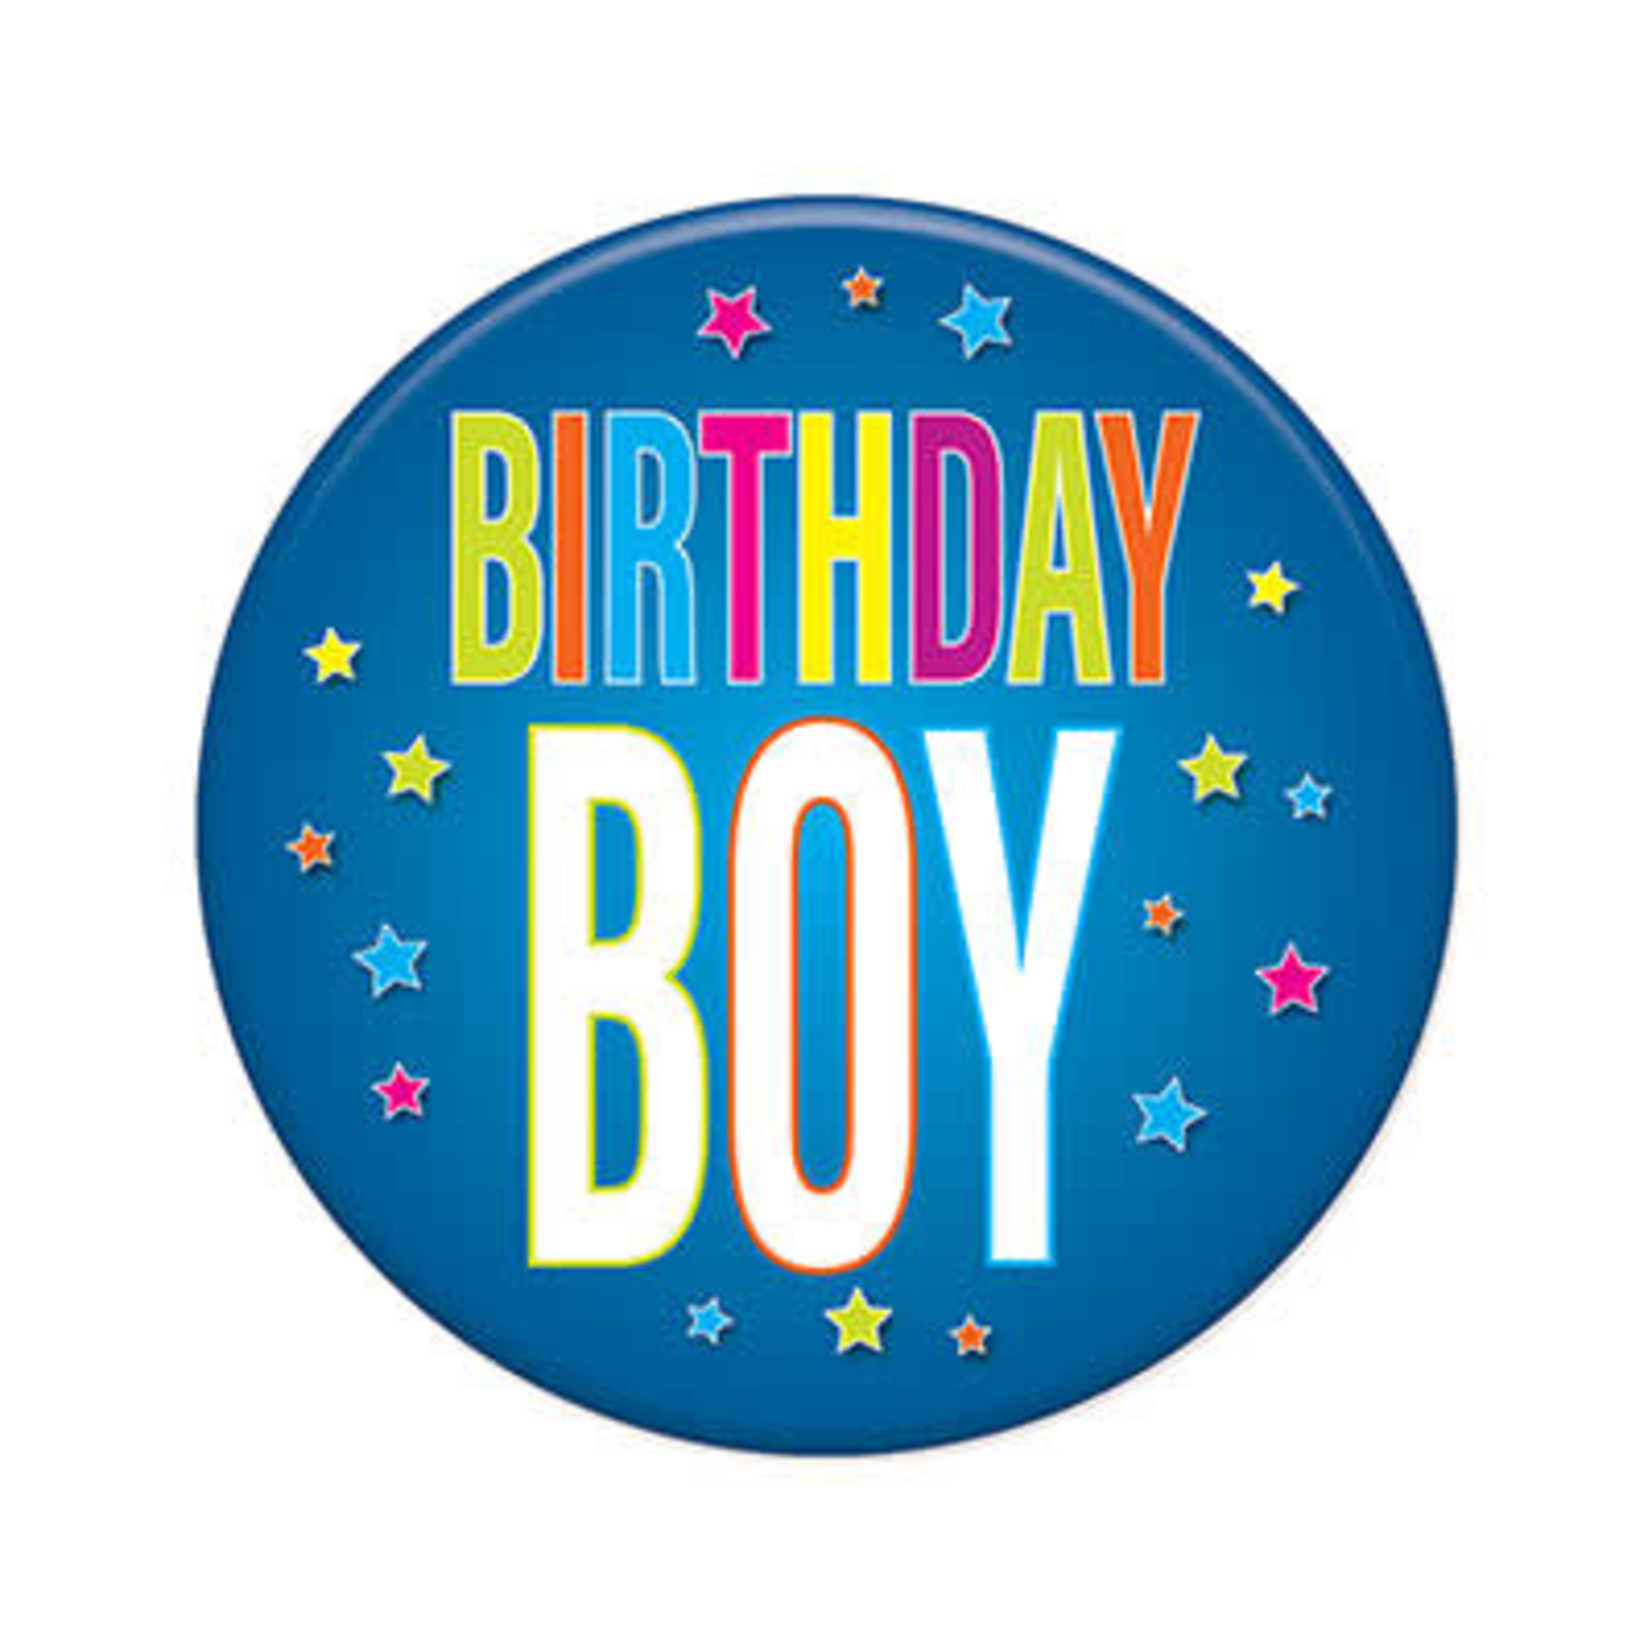 Beistle Birthday Boy Blue Button - 1ct.